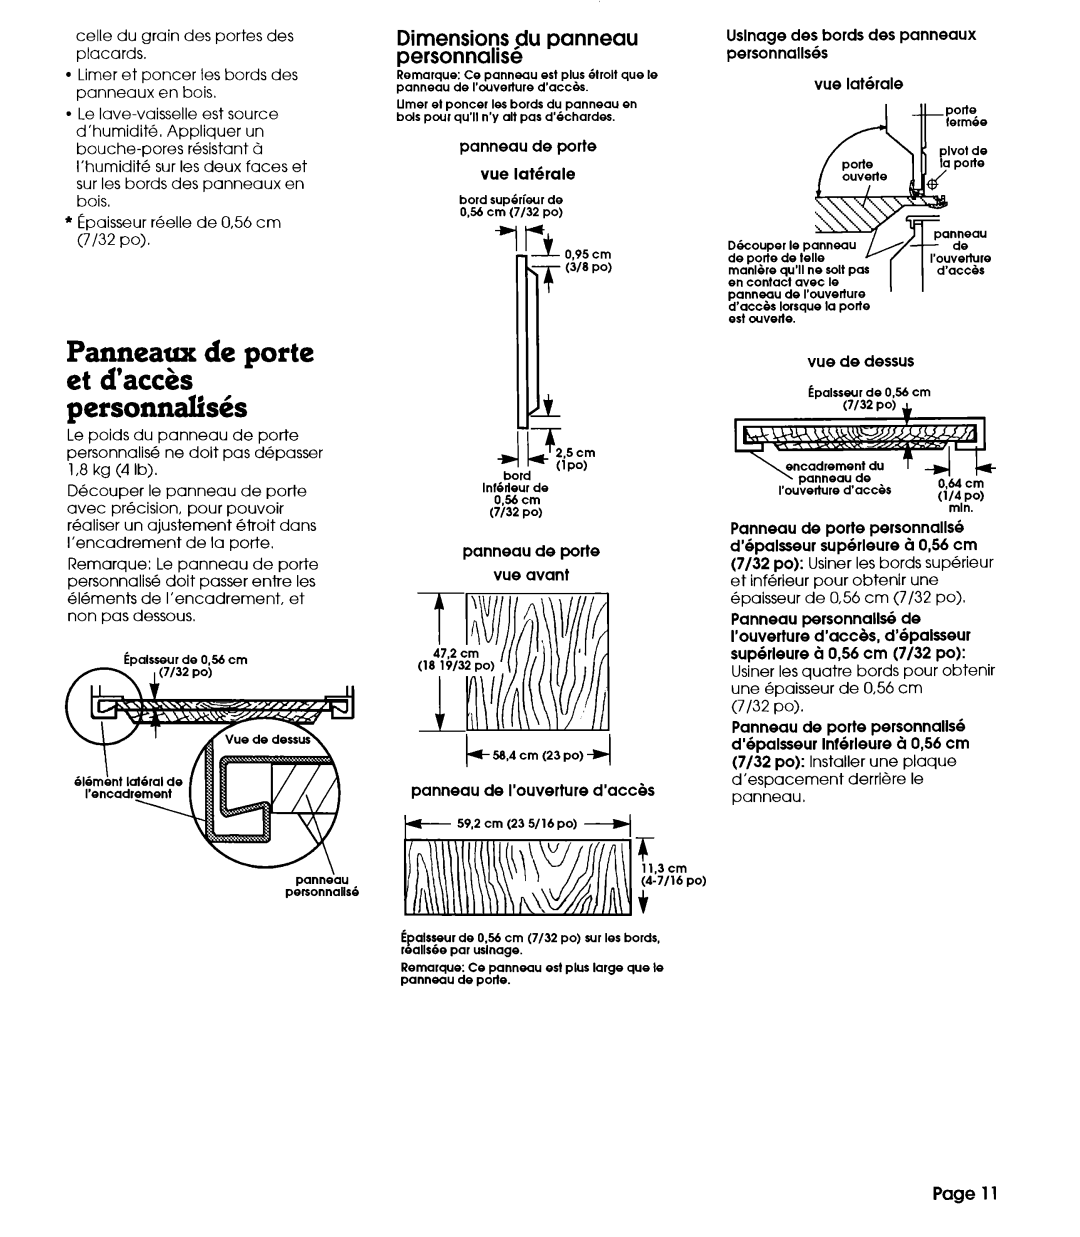 Whirlpool 801 Panneaux de Porte et d’accks personnalhis, Dimensions flu panneau personnalise, Page 